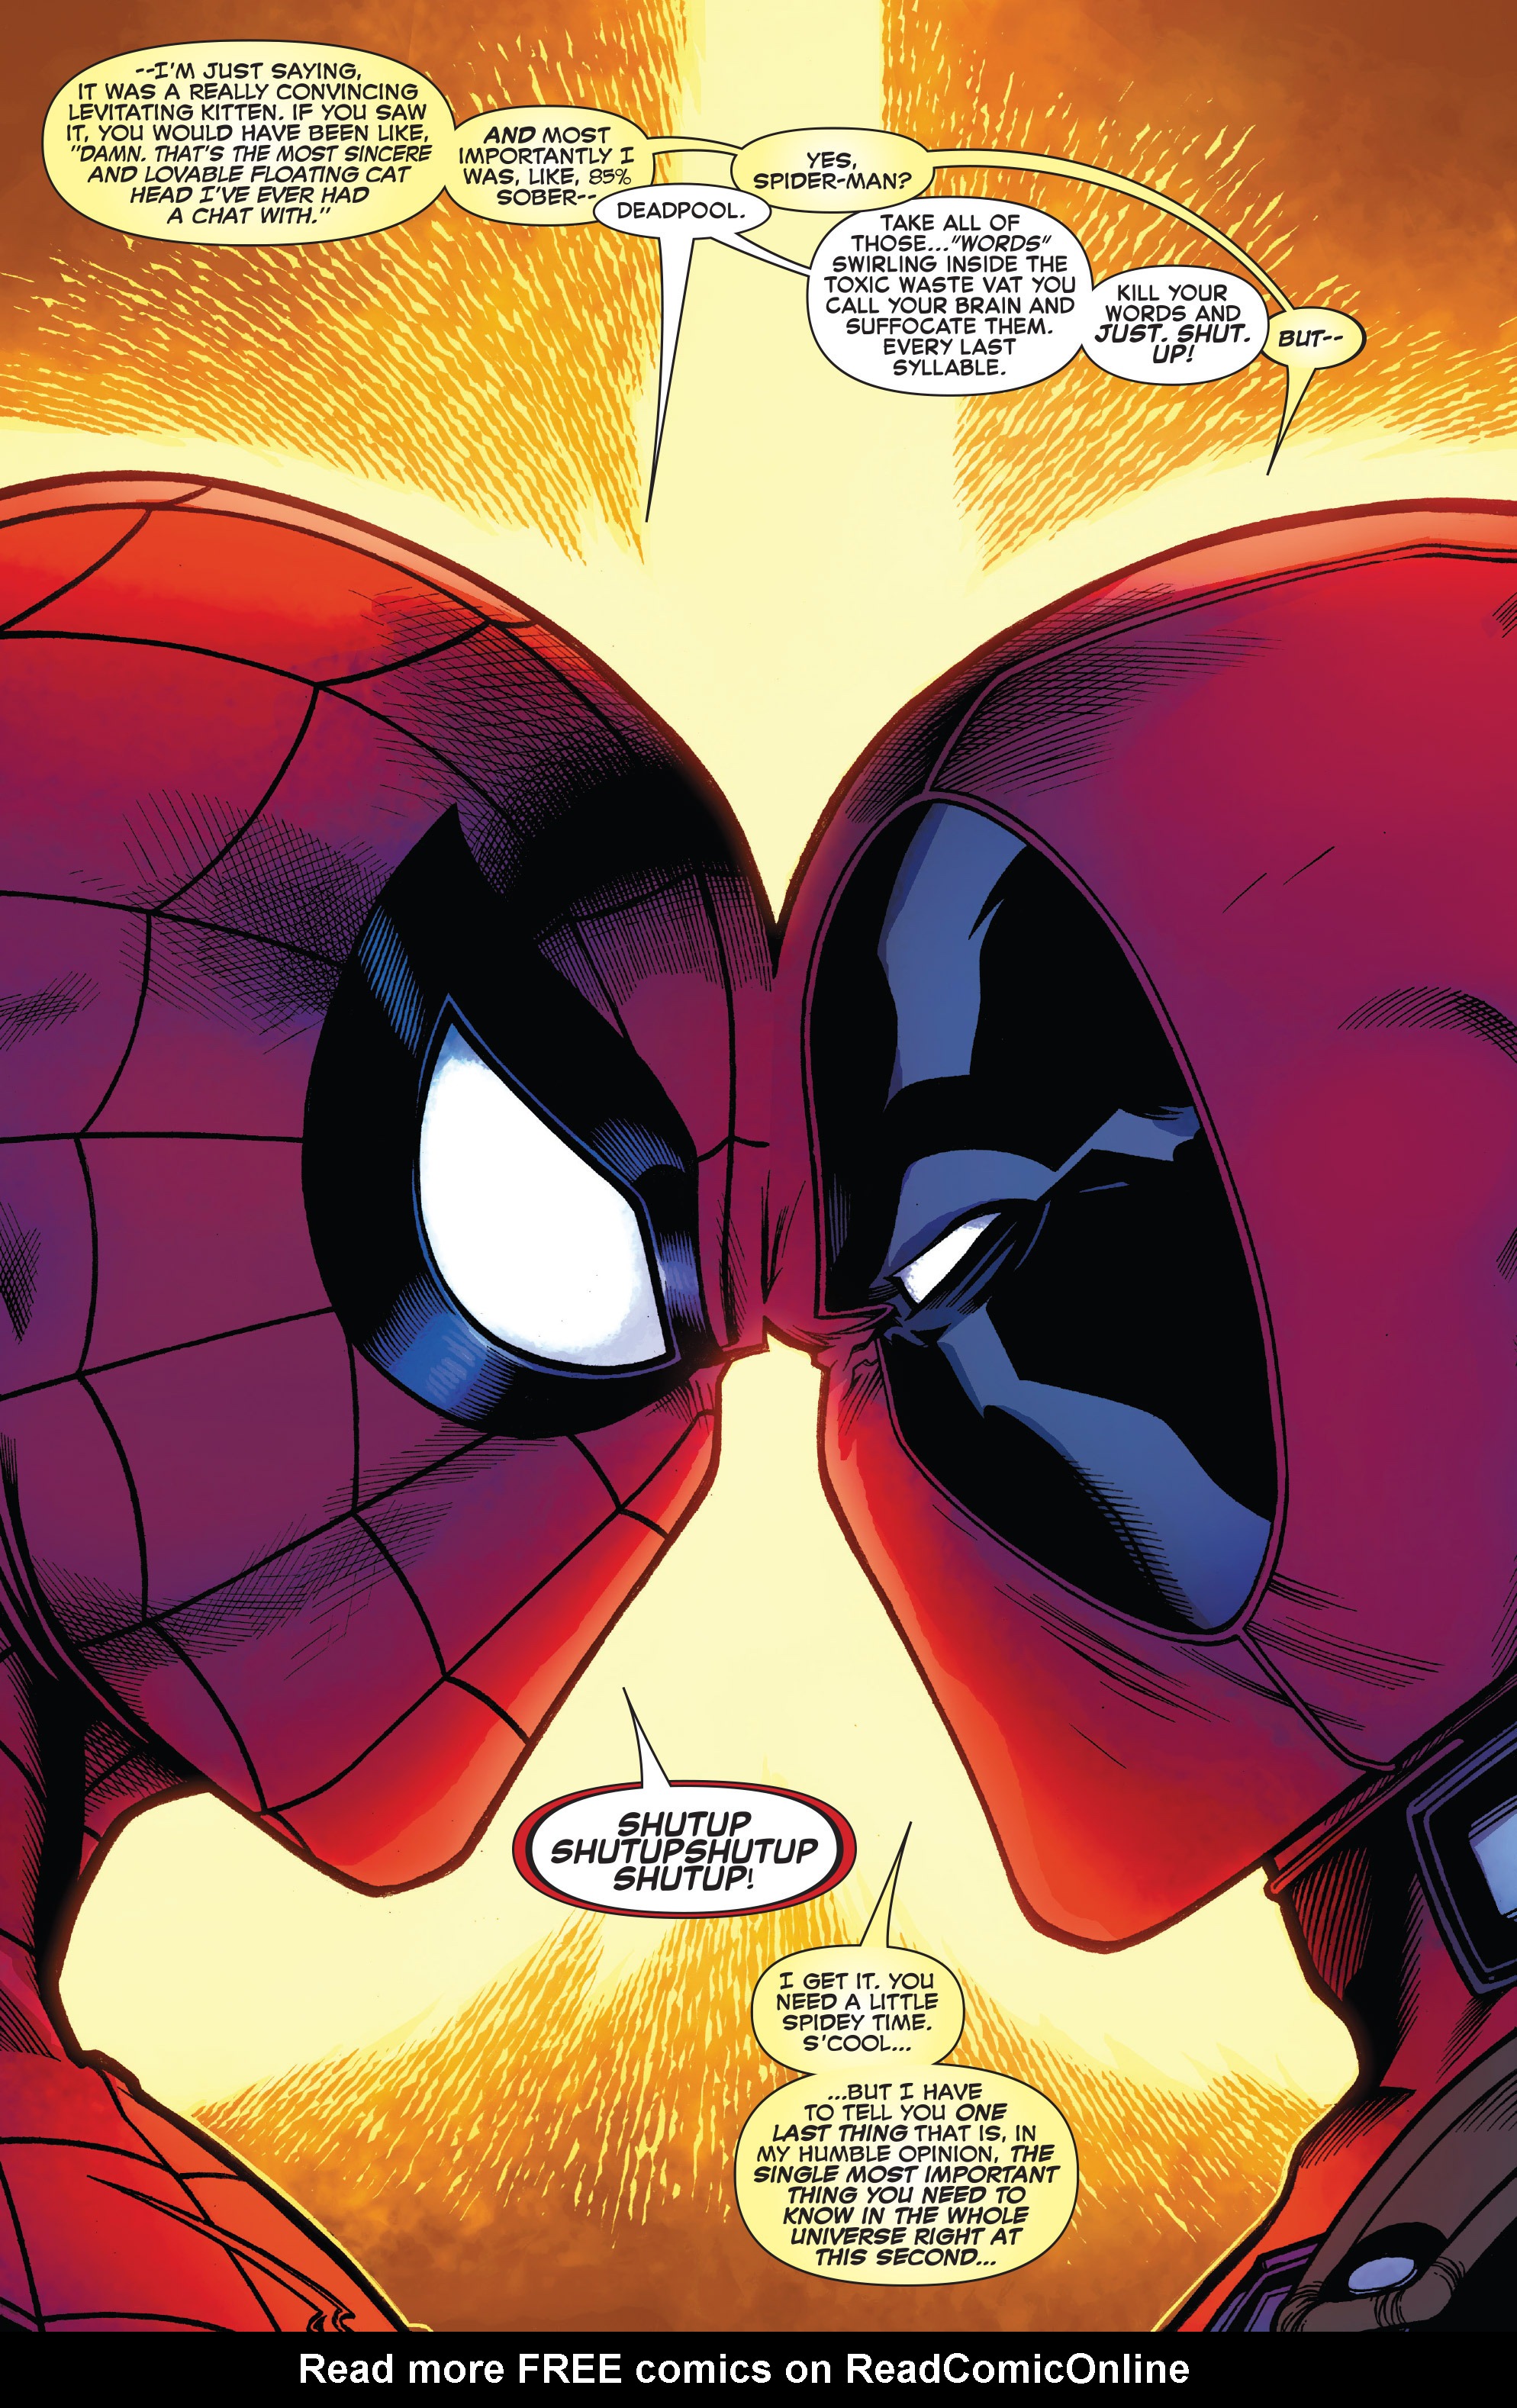 1 Spider-Man / Deadpool Marvel Comics Vol #12-075960608254401211 